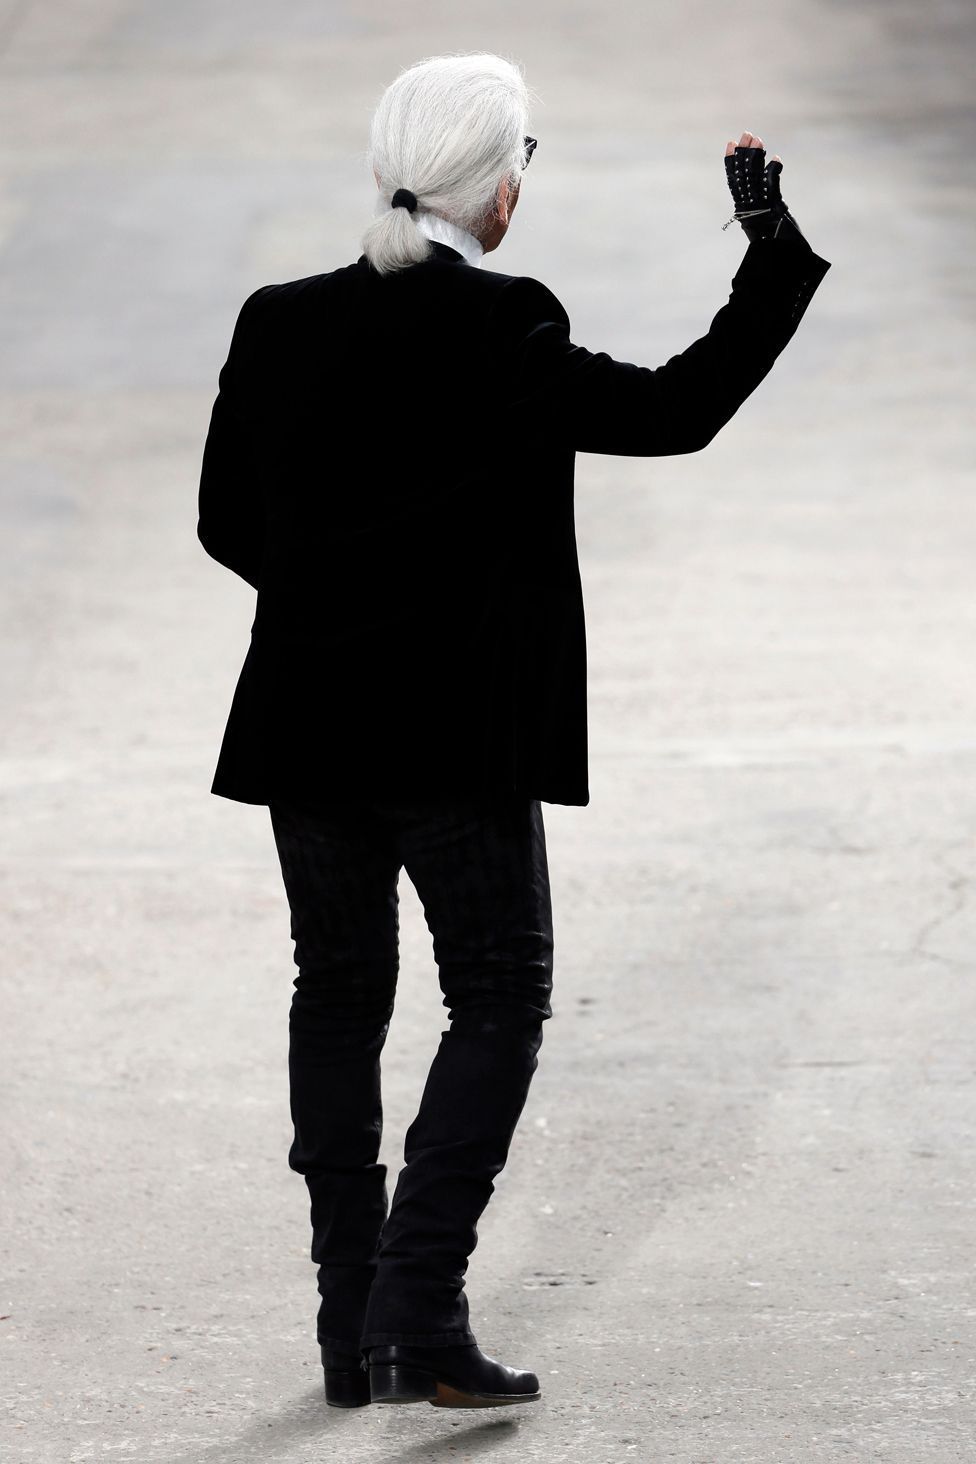 Karl Lagerfeld dies in Paris at the age of 85